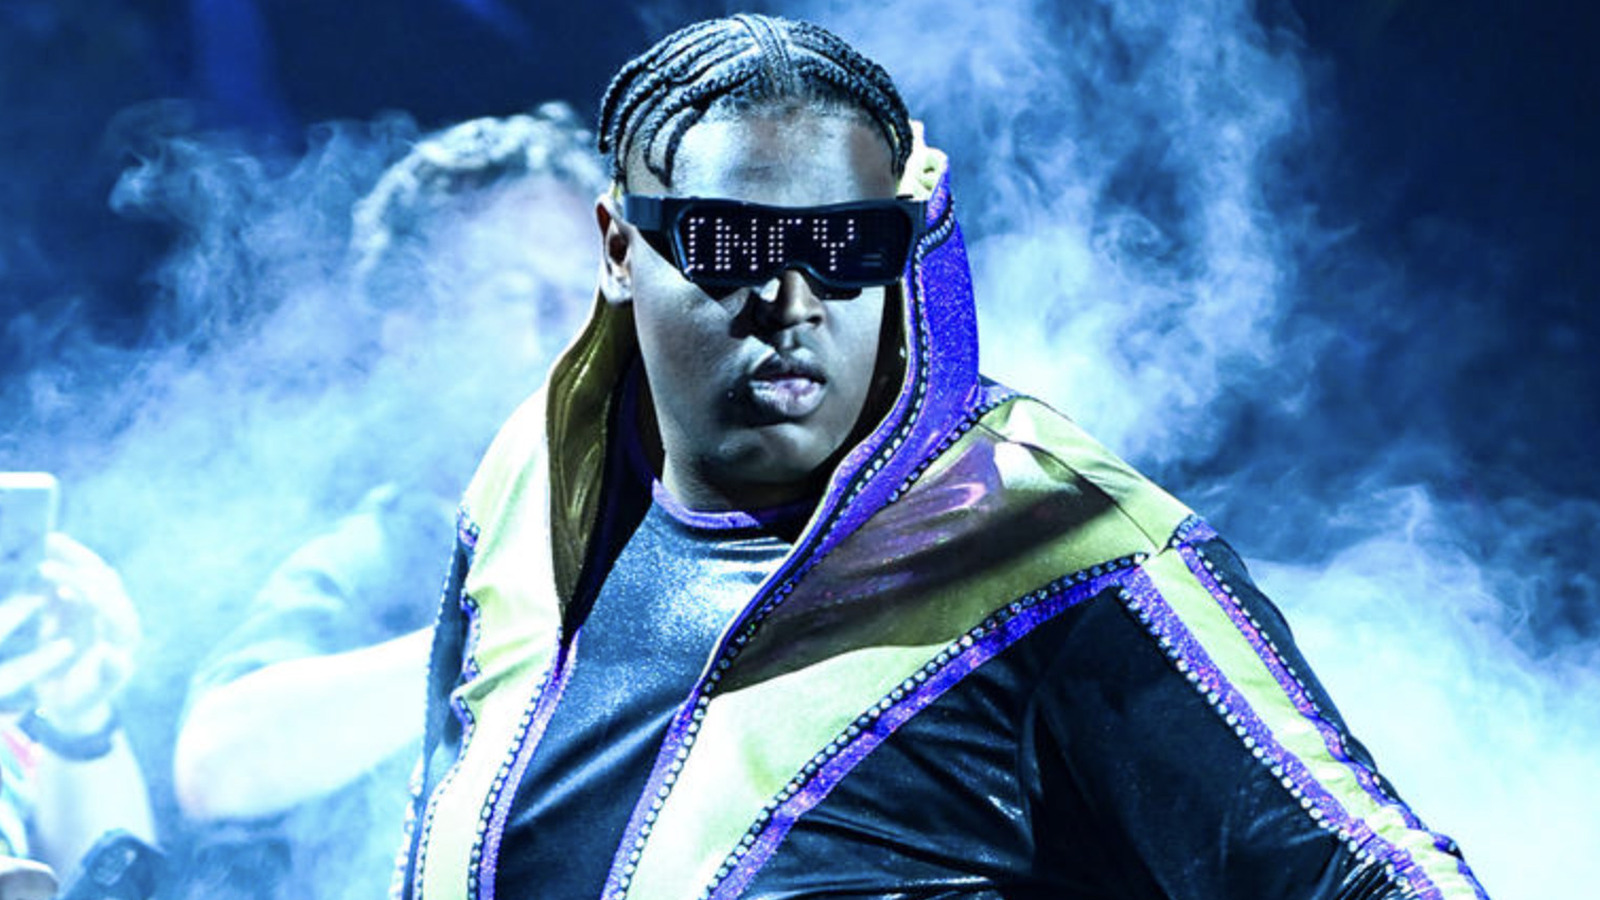 La estrella de WWE NXT debuta como manager de Quincy Elliott en un evento en vivo